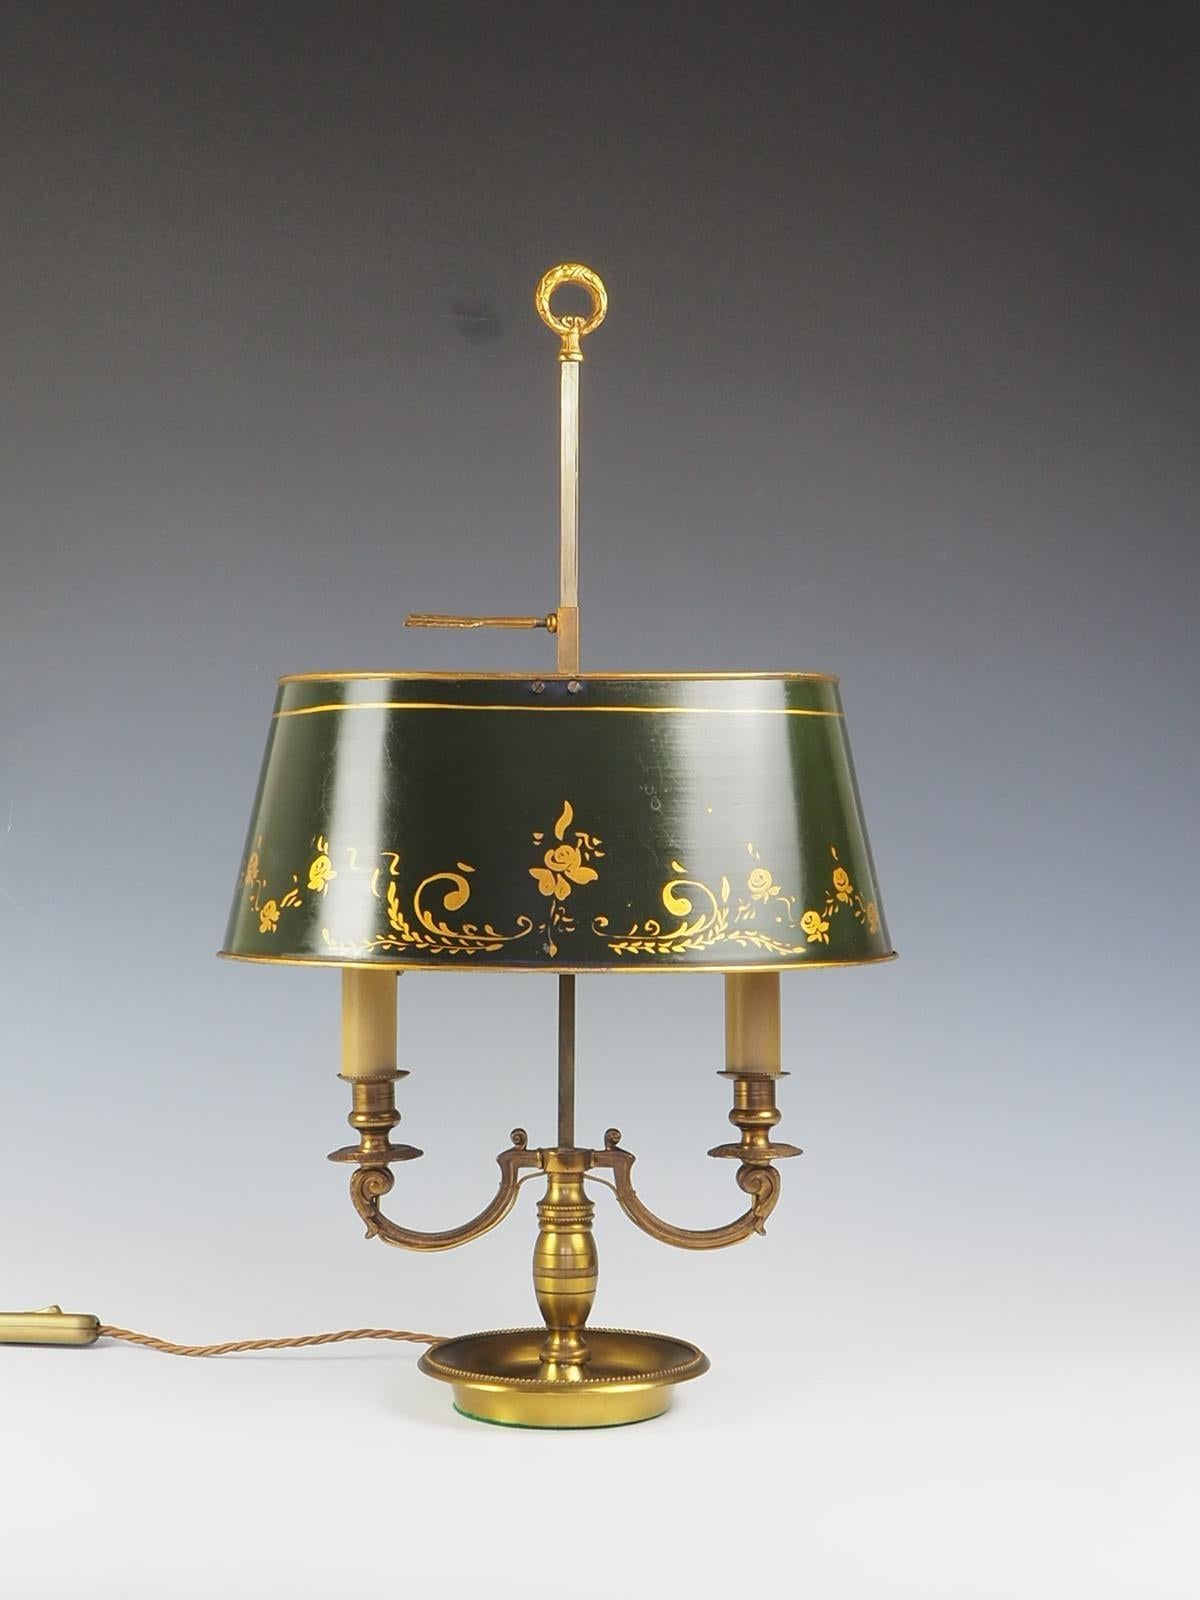 La lampe de table Bouillotte du 20ème siècle est une pièce étonnante fabriquée en laiton, avec un bras jumeau et un abat-jour vert ajustable.

La lampe respire l'élégance et la sophistication, ce qui en fait un complément parfait pour tout intérieur